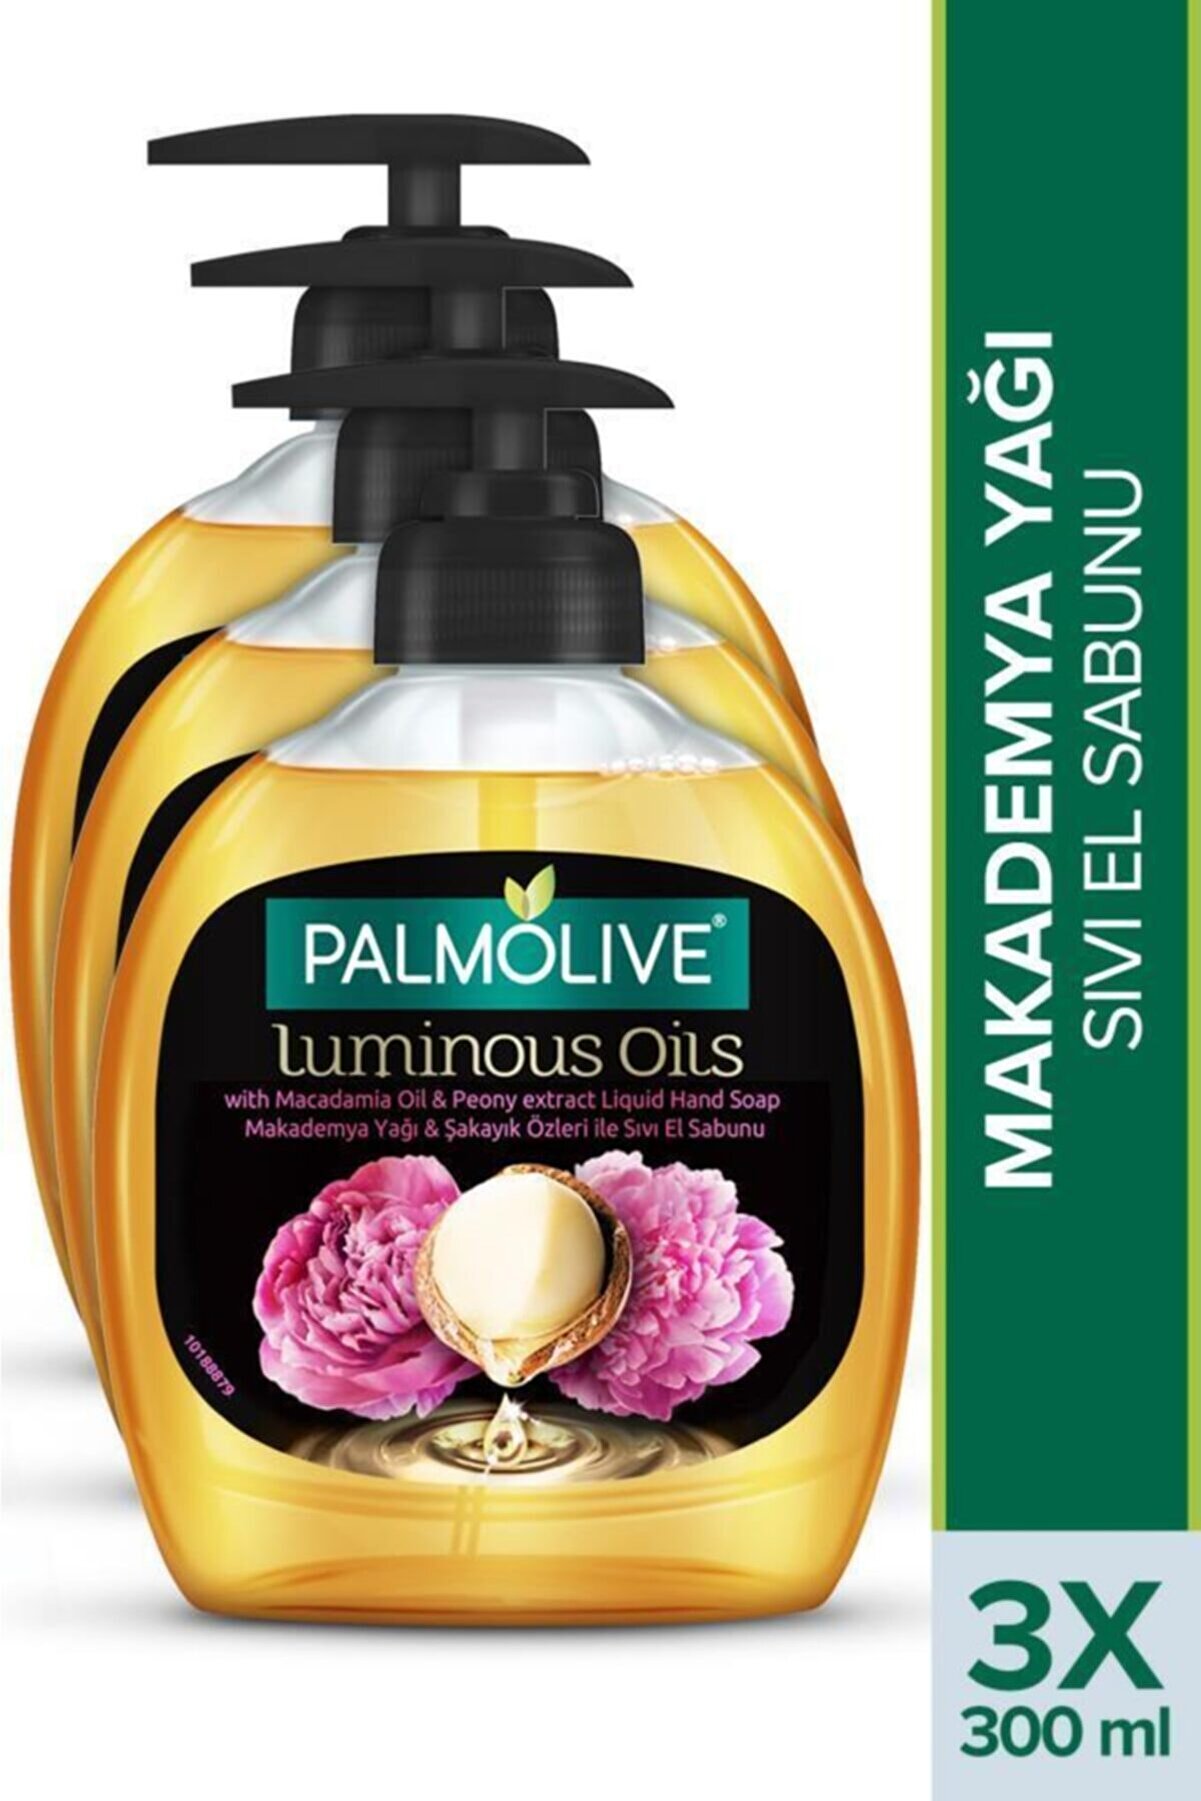 Palmolive Luminous Oils Makademya Yağı & Şakayık Özleri Sıvı El Sabunu 3 x 300 ml